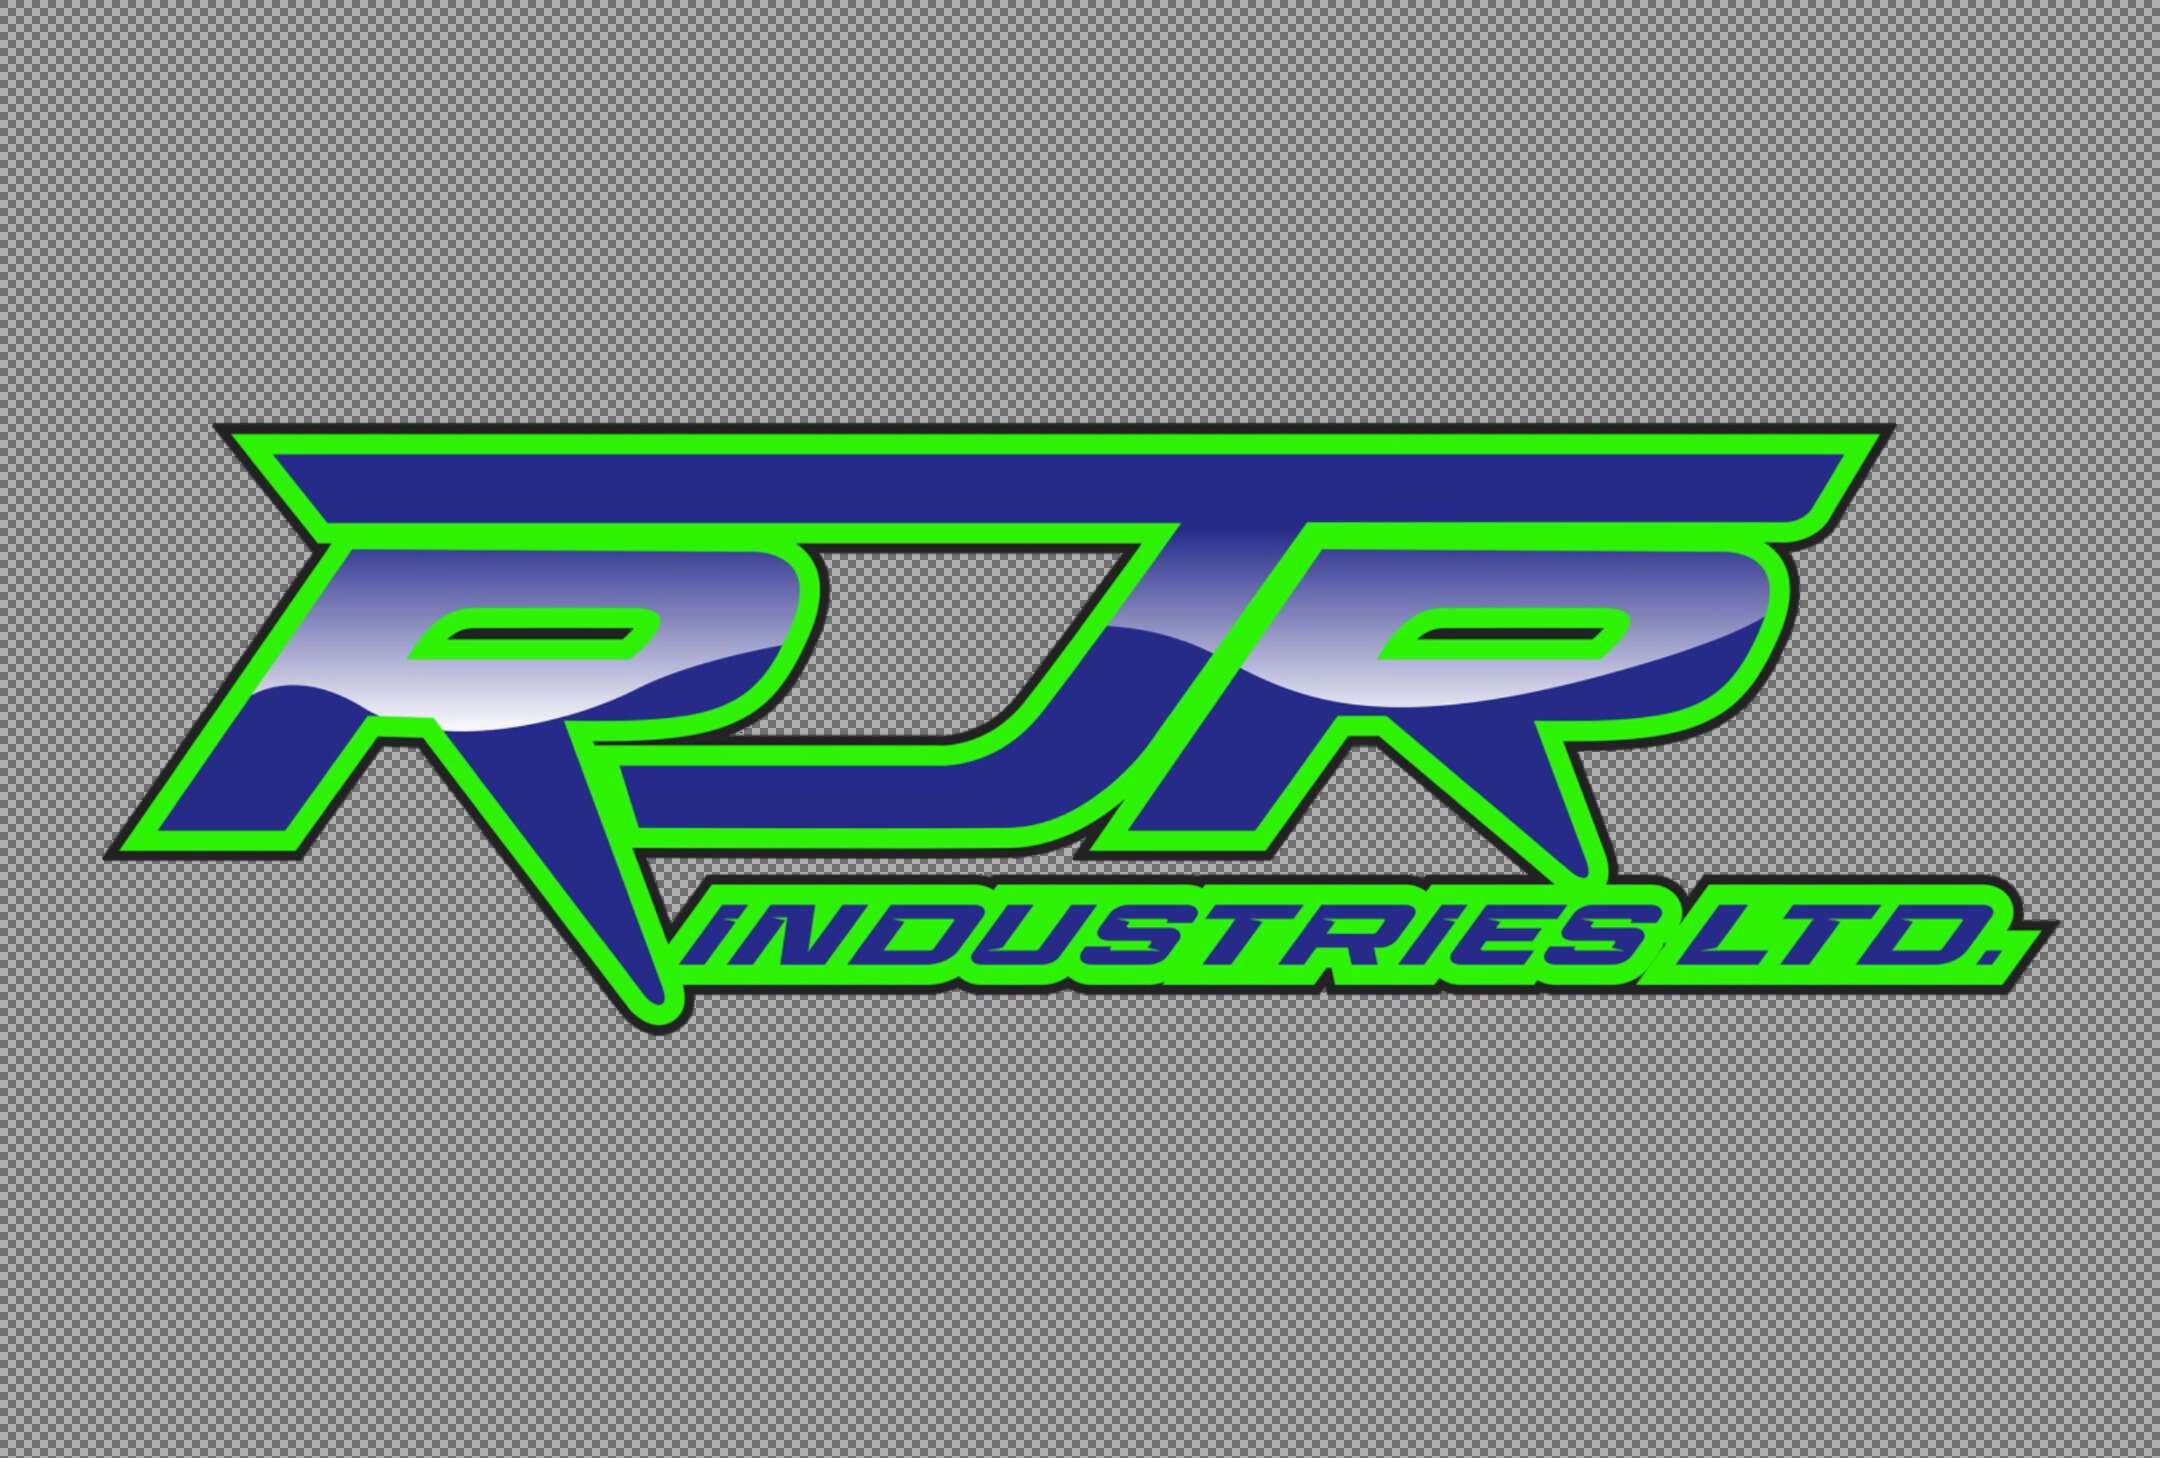 RJR Industries